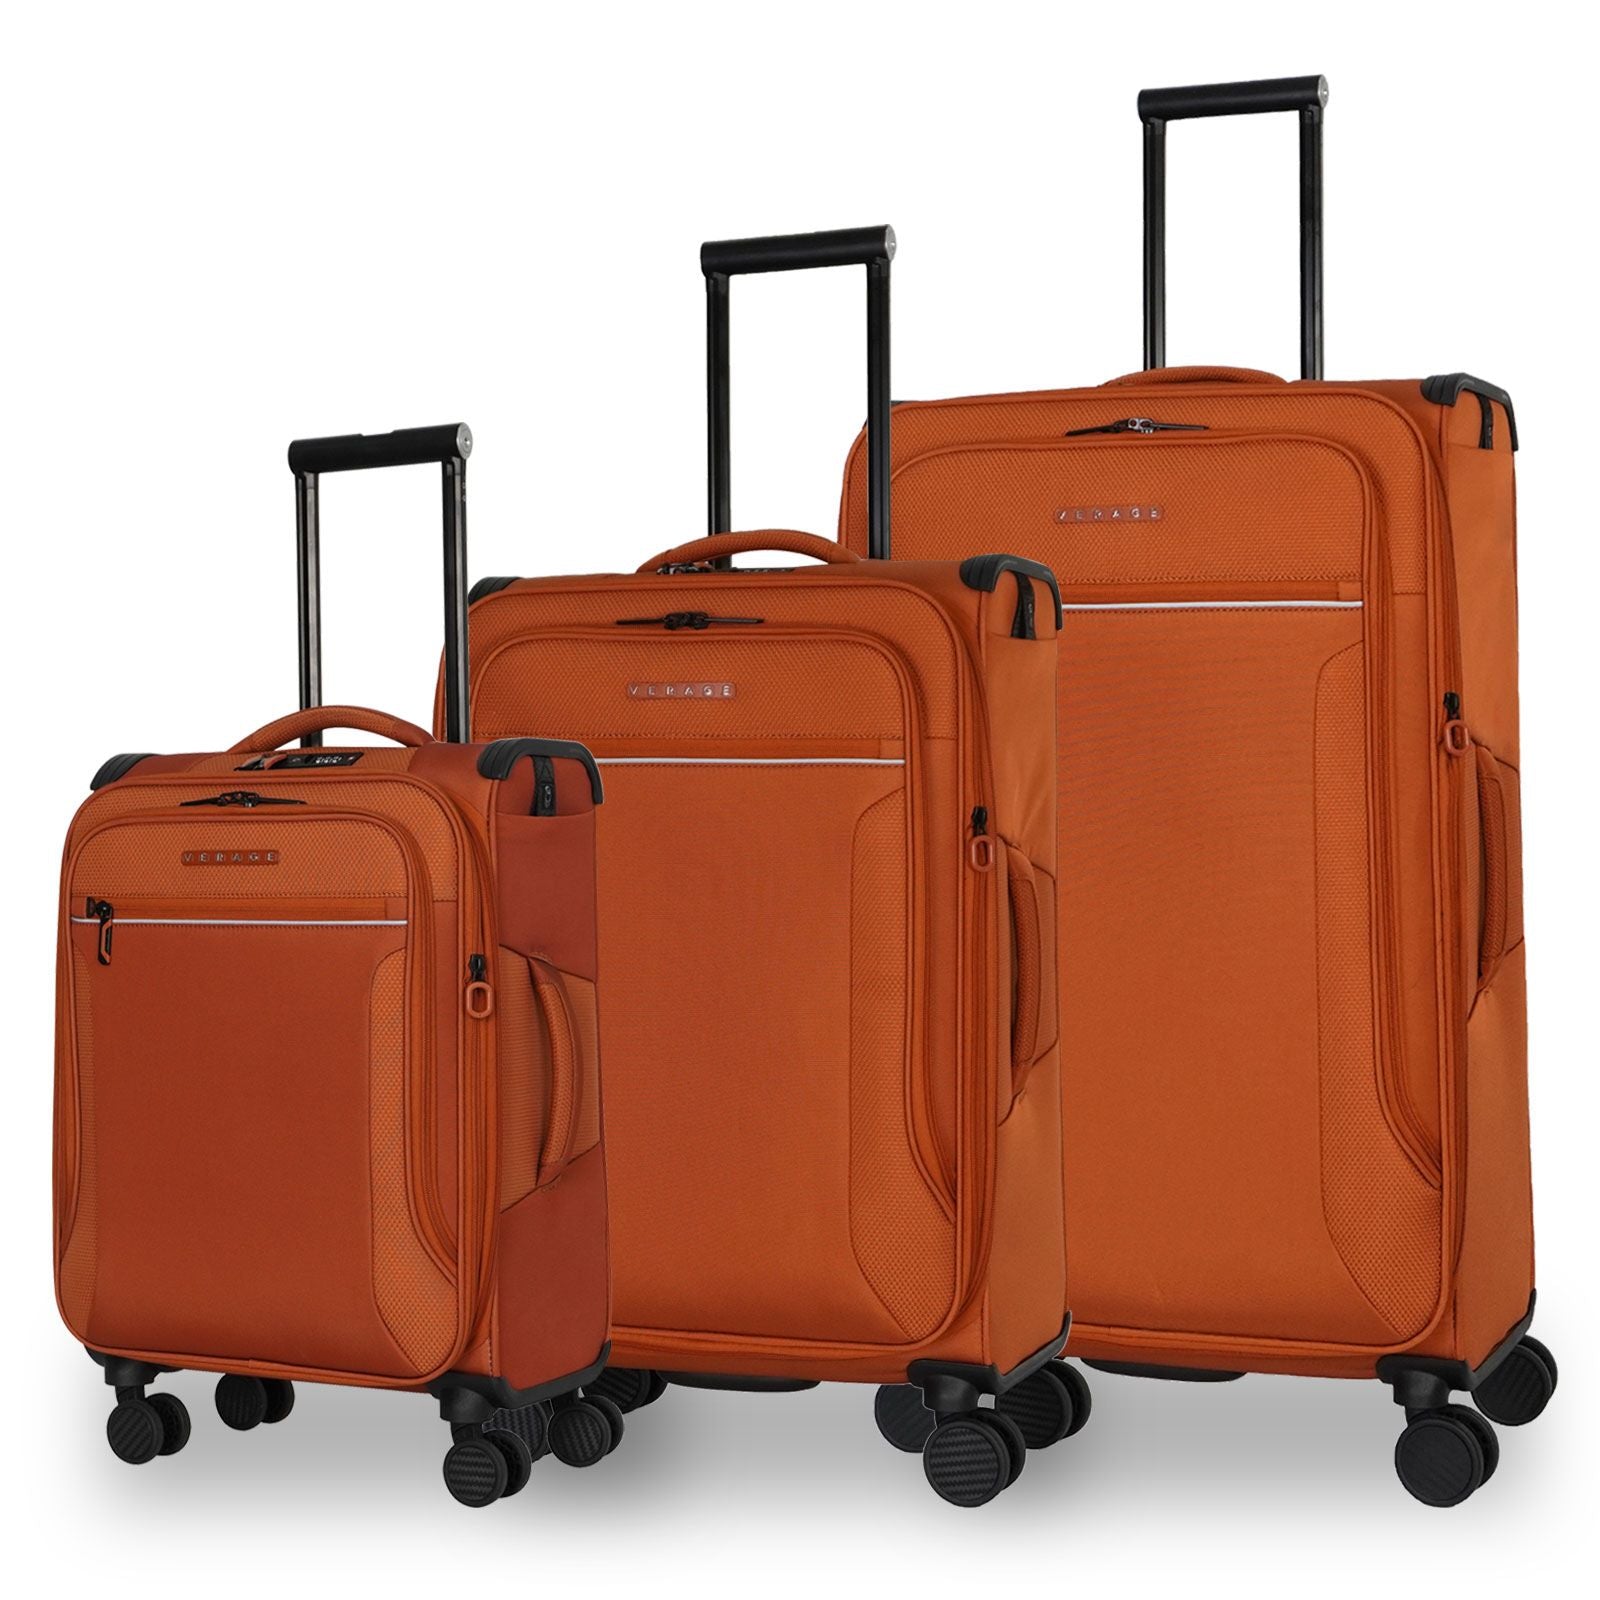 סט 3 מזוודות רכות קלות במיוחד דגם TOLEDO 3 Premium מבית היוקרה Verage אנגליה